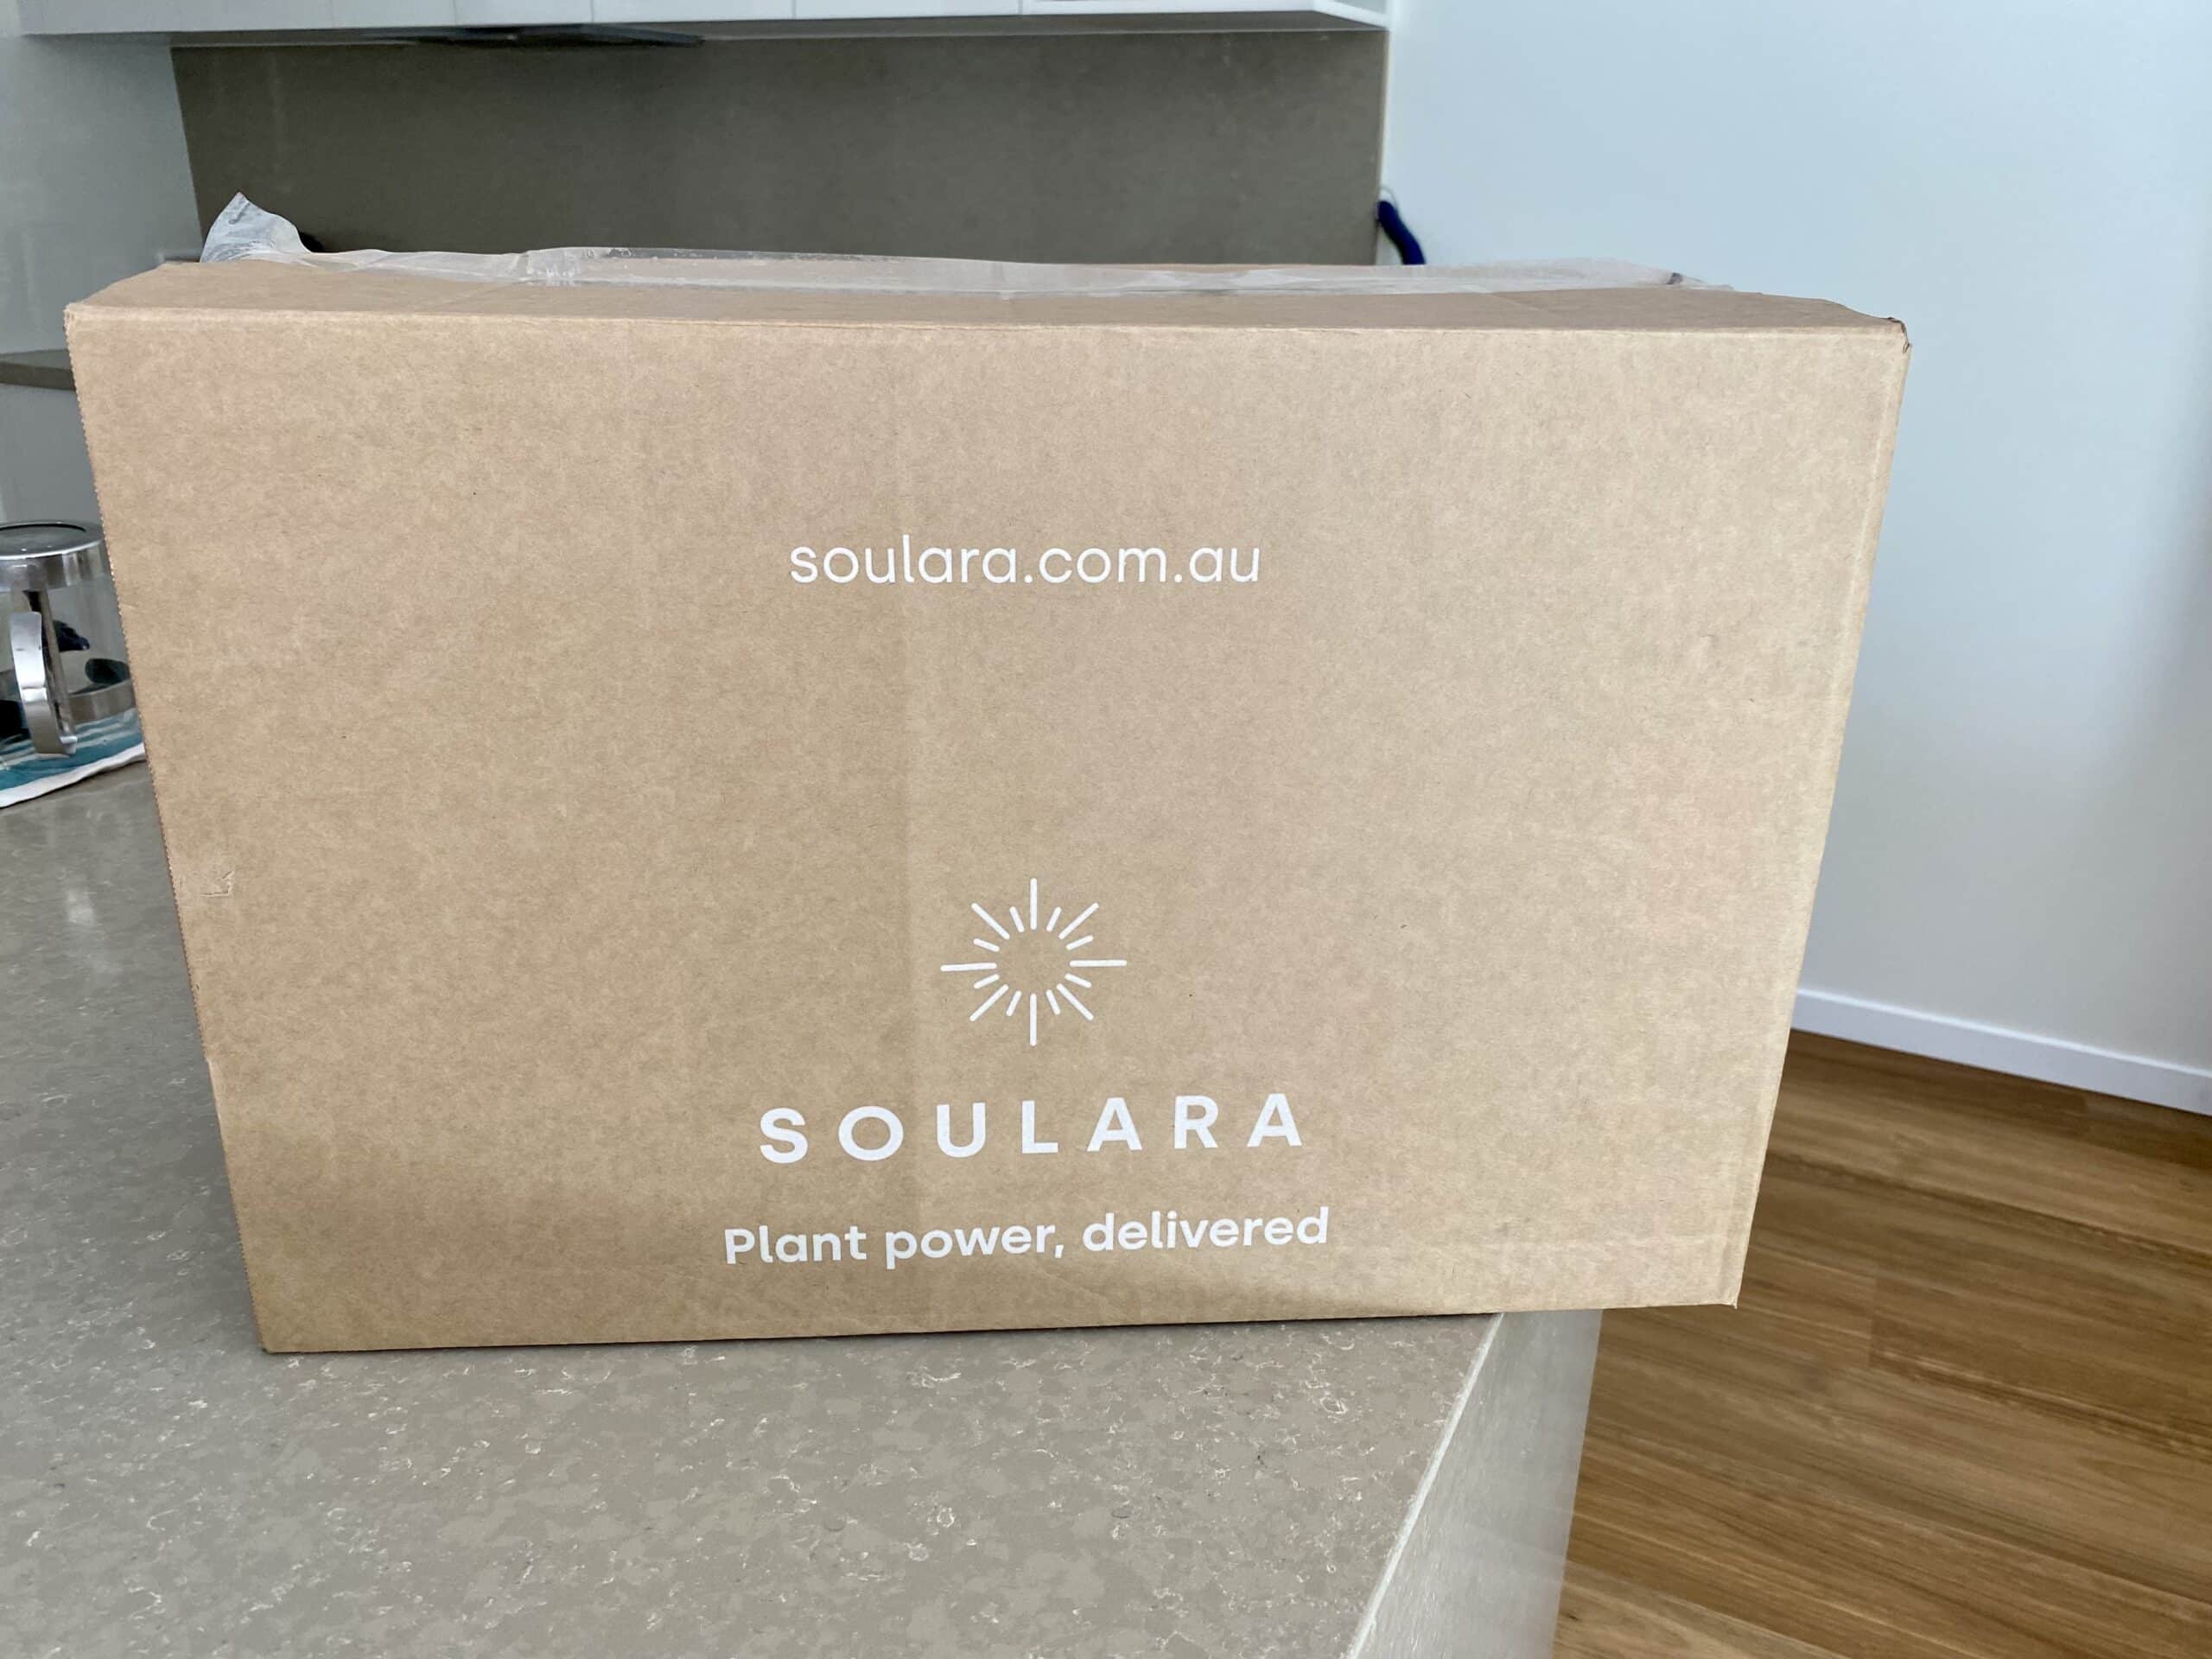 Soulara box